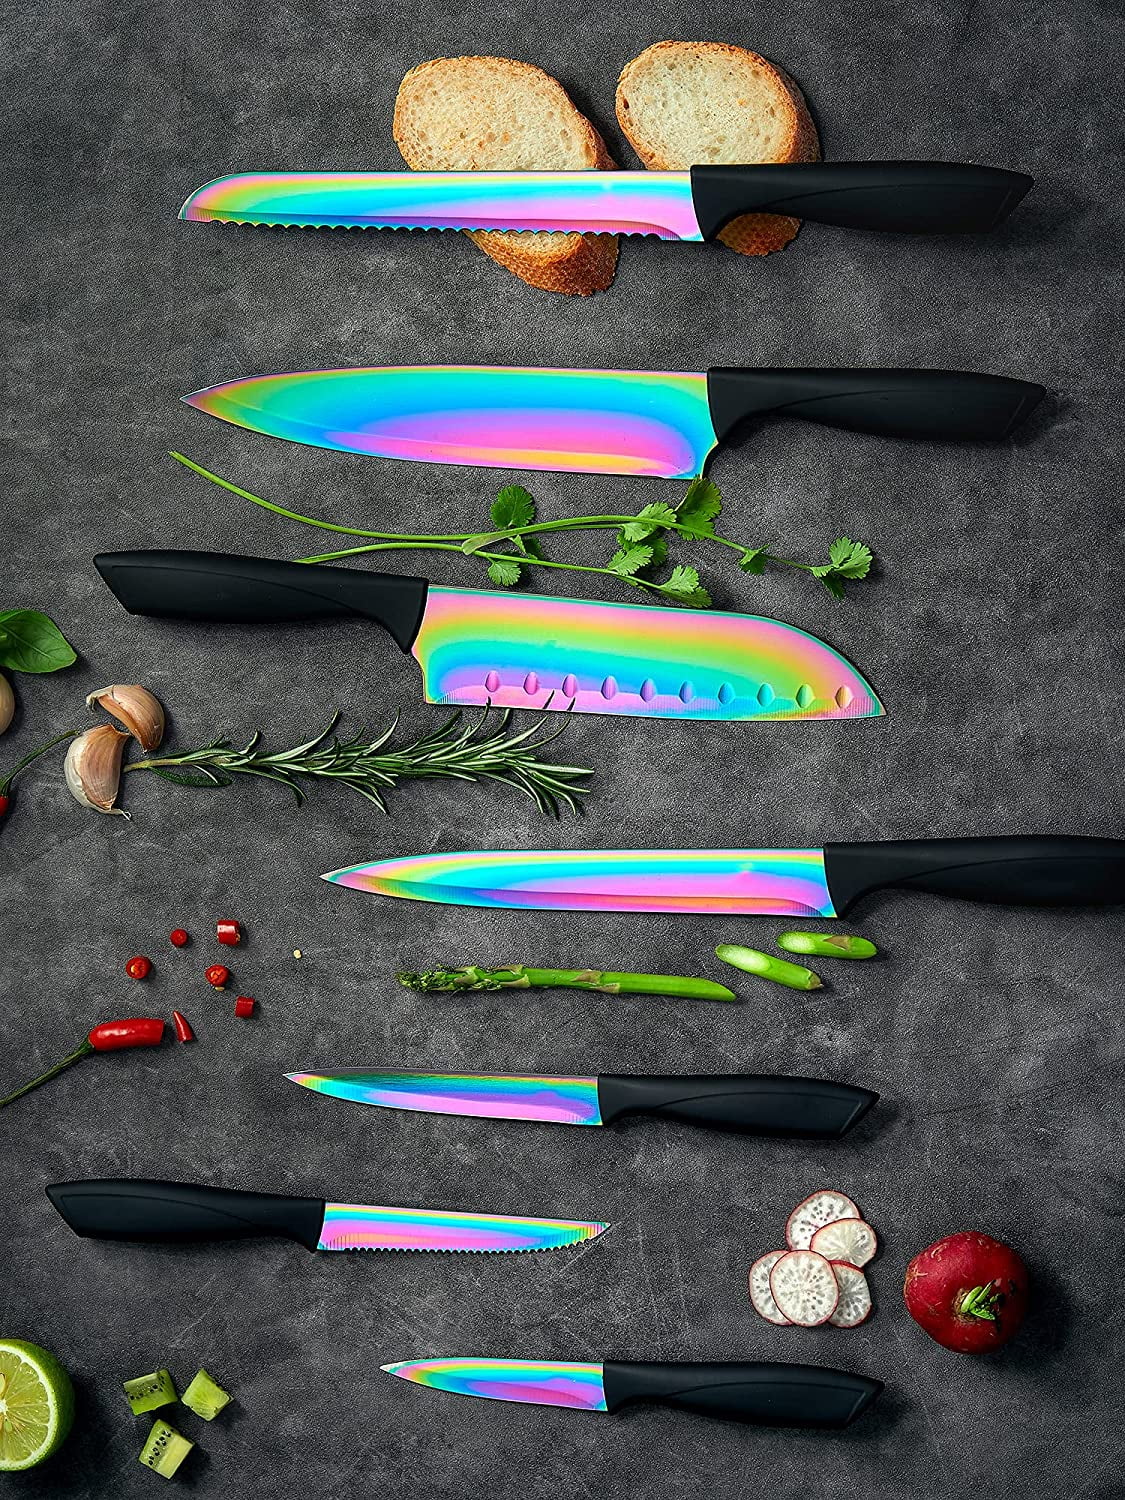 Yatoshi 7 Piece Knife Set - Onyx Black Titanium Nitride Coating